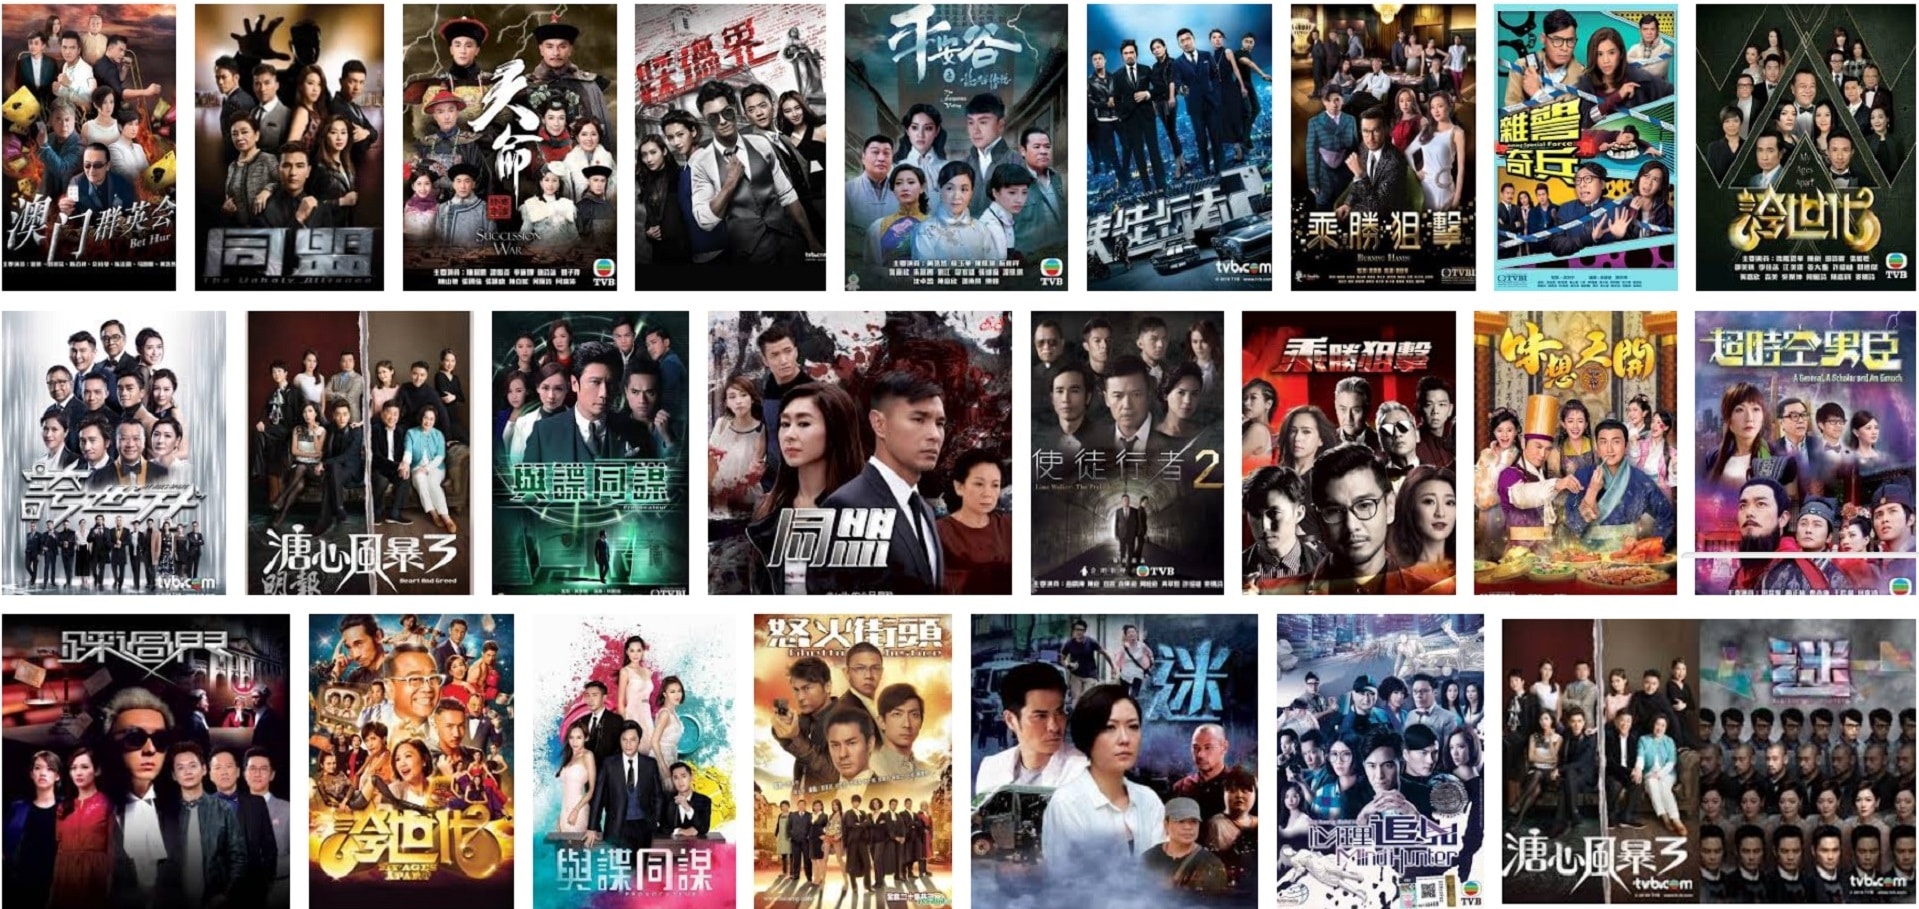 HK TV Drama Best Hong Kong Drama